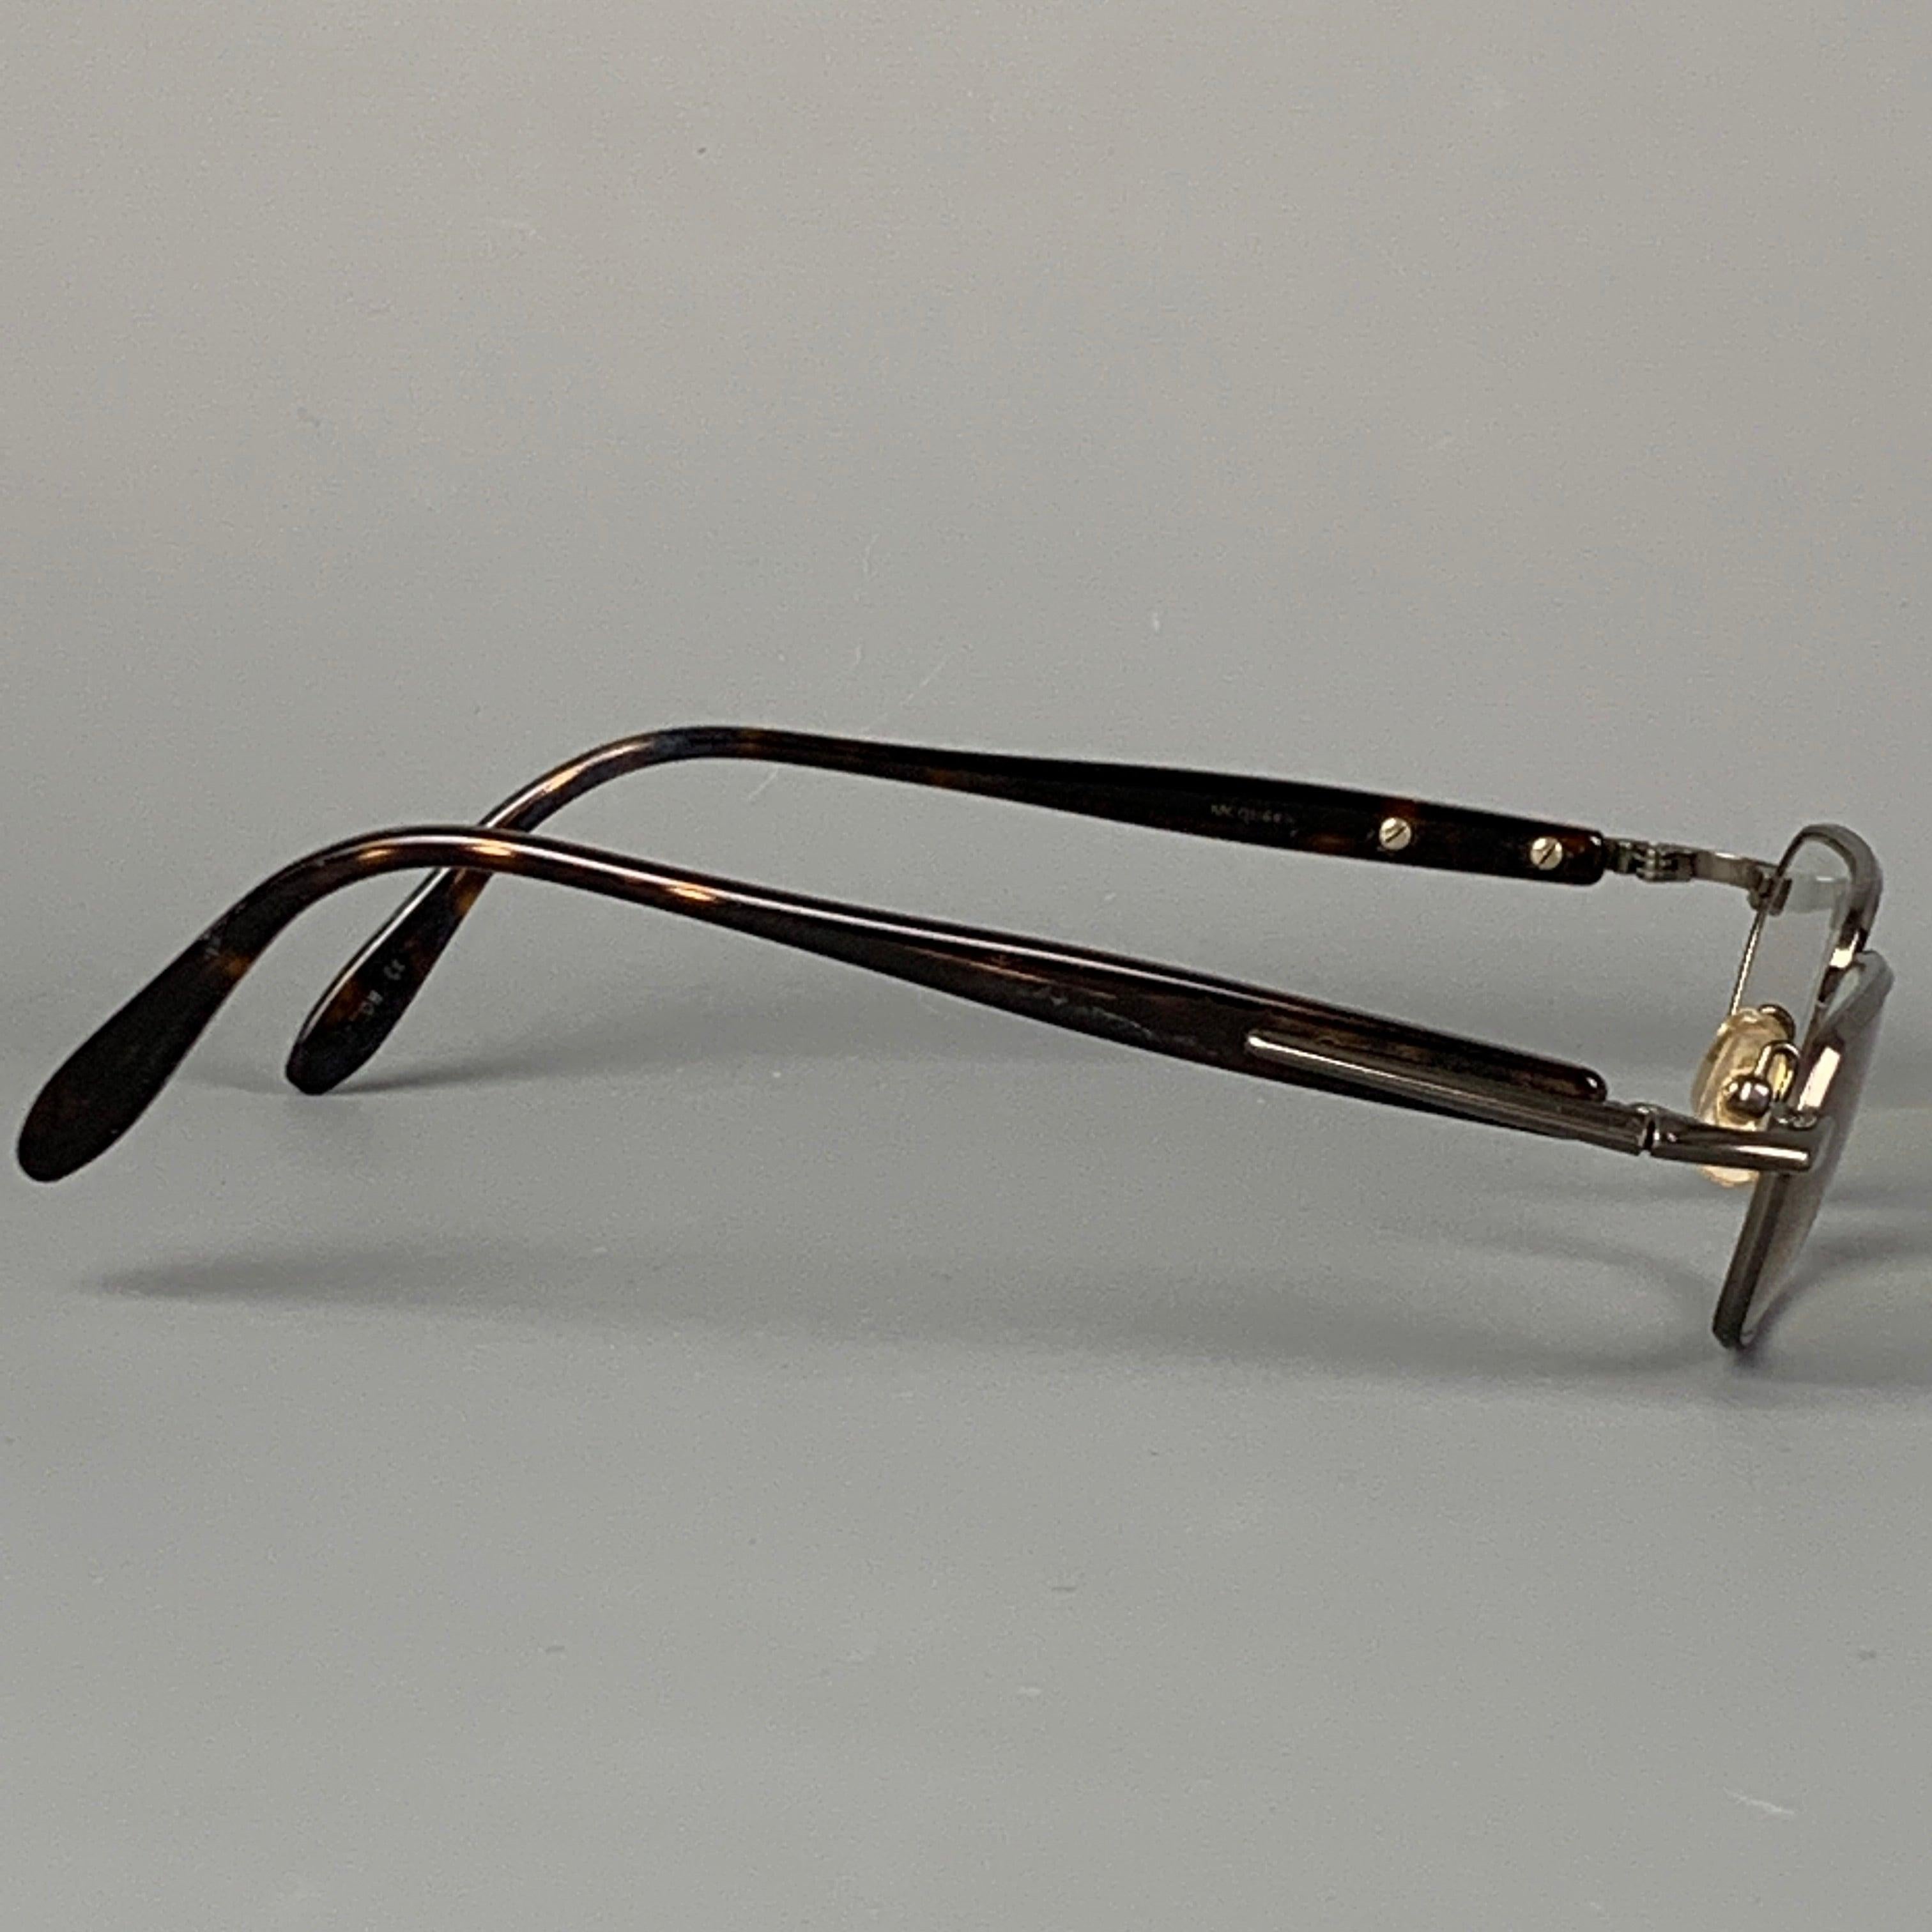 KIESELSTEIN-CORD ist eine Schildpattbrille aus Rotguss mit Korrektionsgläsern. Hergestellt in Japan. Gut
Gebrauchtes Zustand. 

Abmessungen: 
  Länge: 14 cm. Höhe: 3 Zoll 
  
  
 
Sui Generis-Referenz: 114878
Kategorie: Sonnenbrillen & Brillen
Mehr